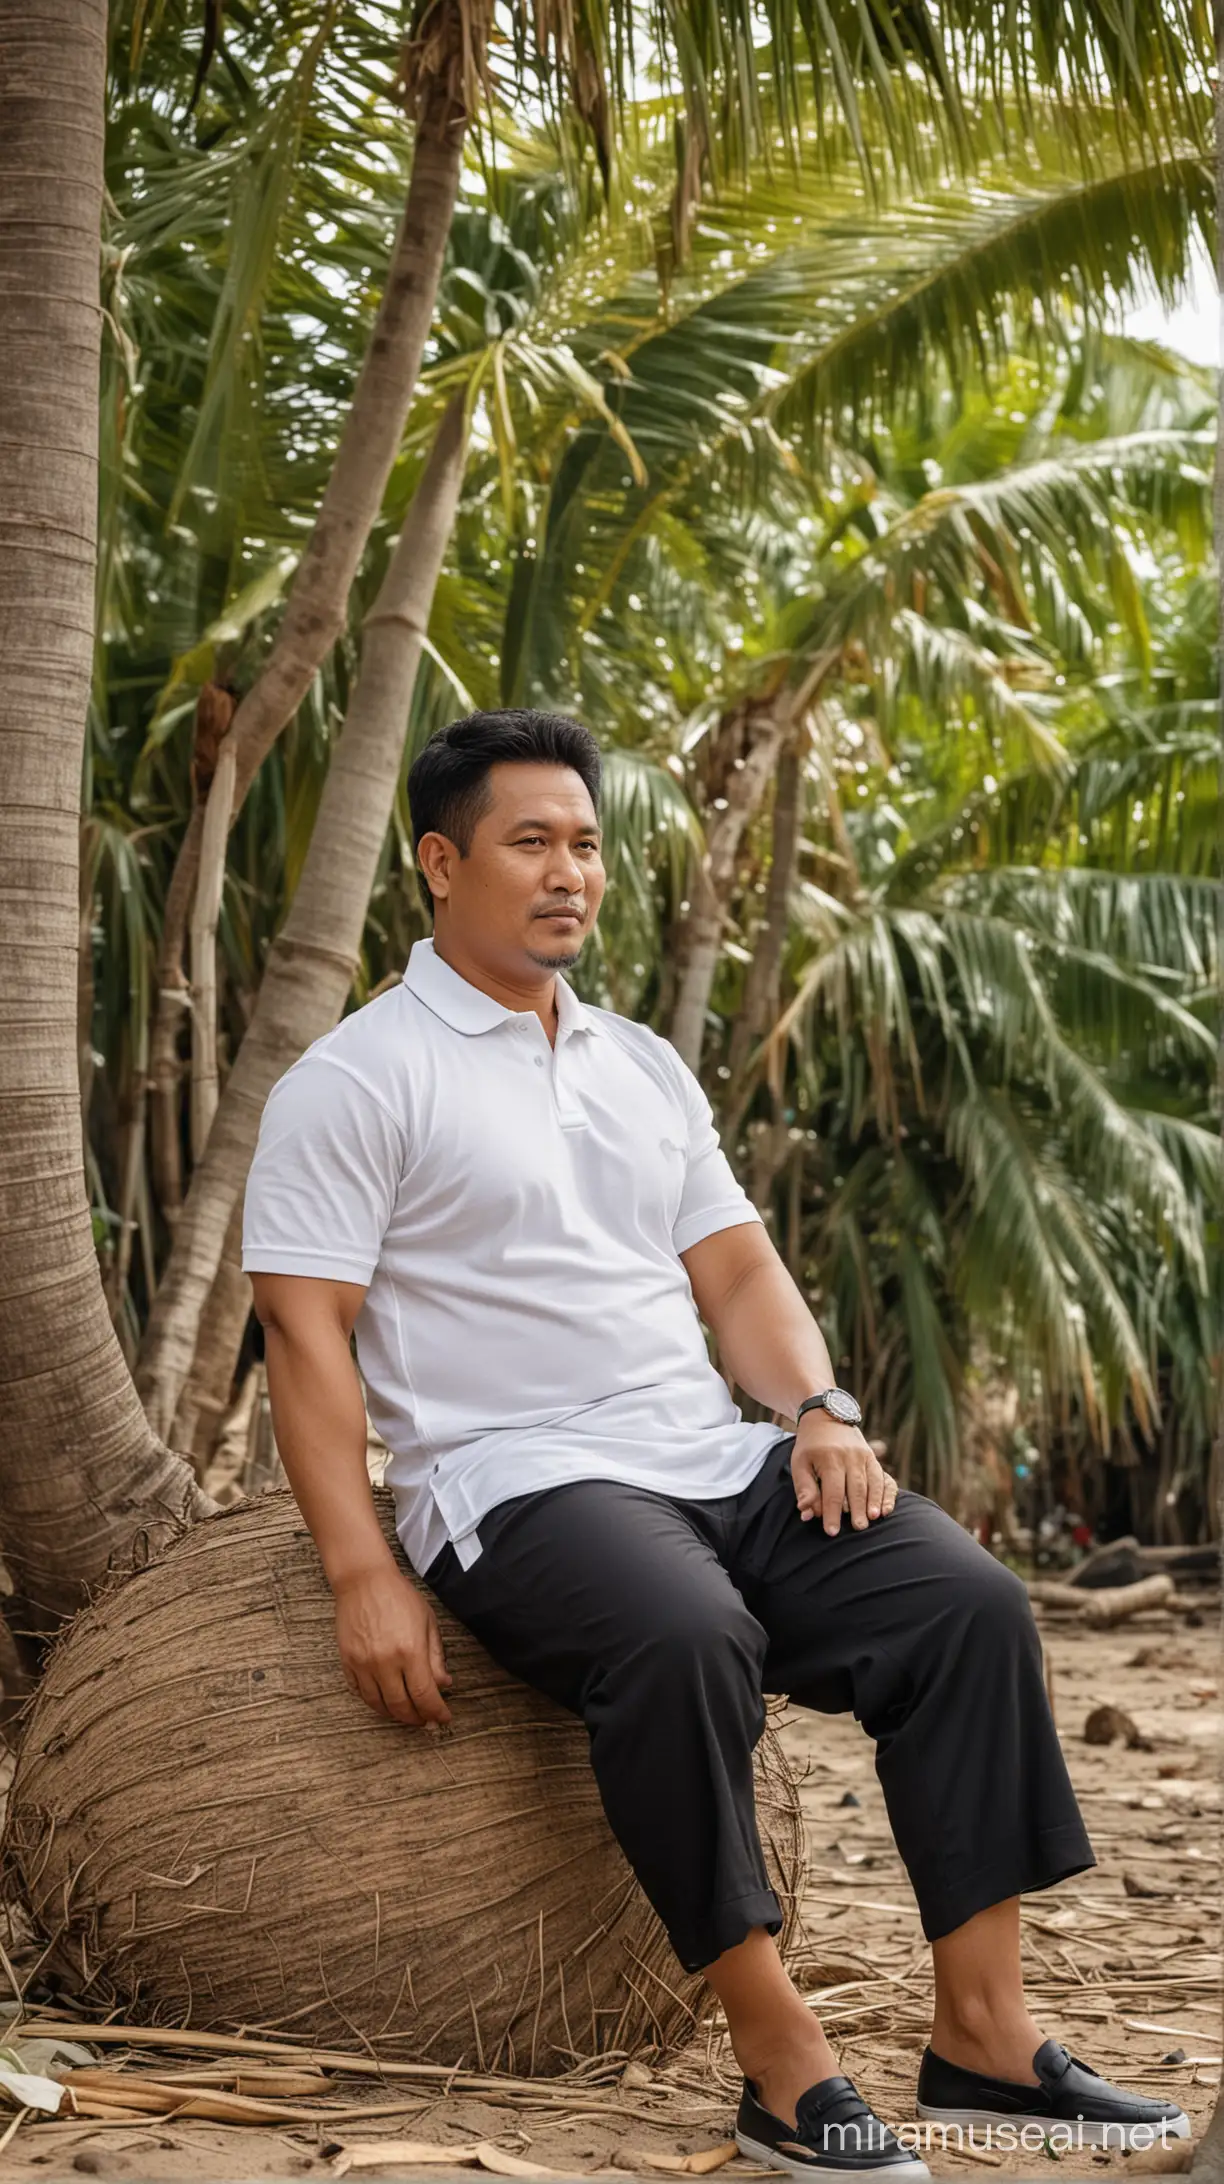 Foto realistis,pria indonesia usia 50 tahun,badan gemuk,rambut pendek,hitam rapi belah tepi,memakai baju polo putih,celana hitam,sedang duduk santai di bawah pohon kelapa